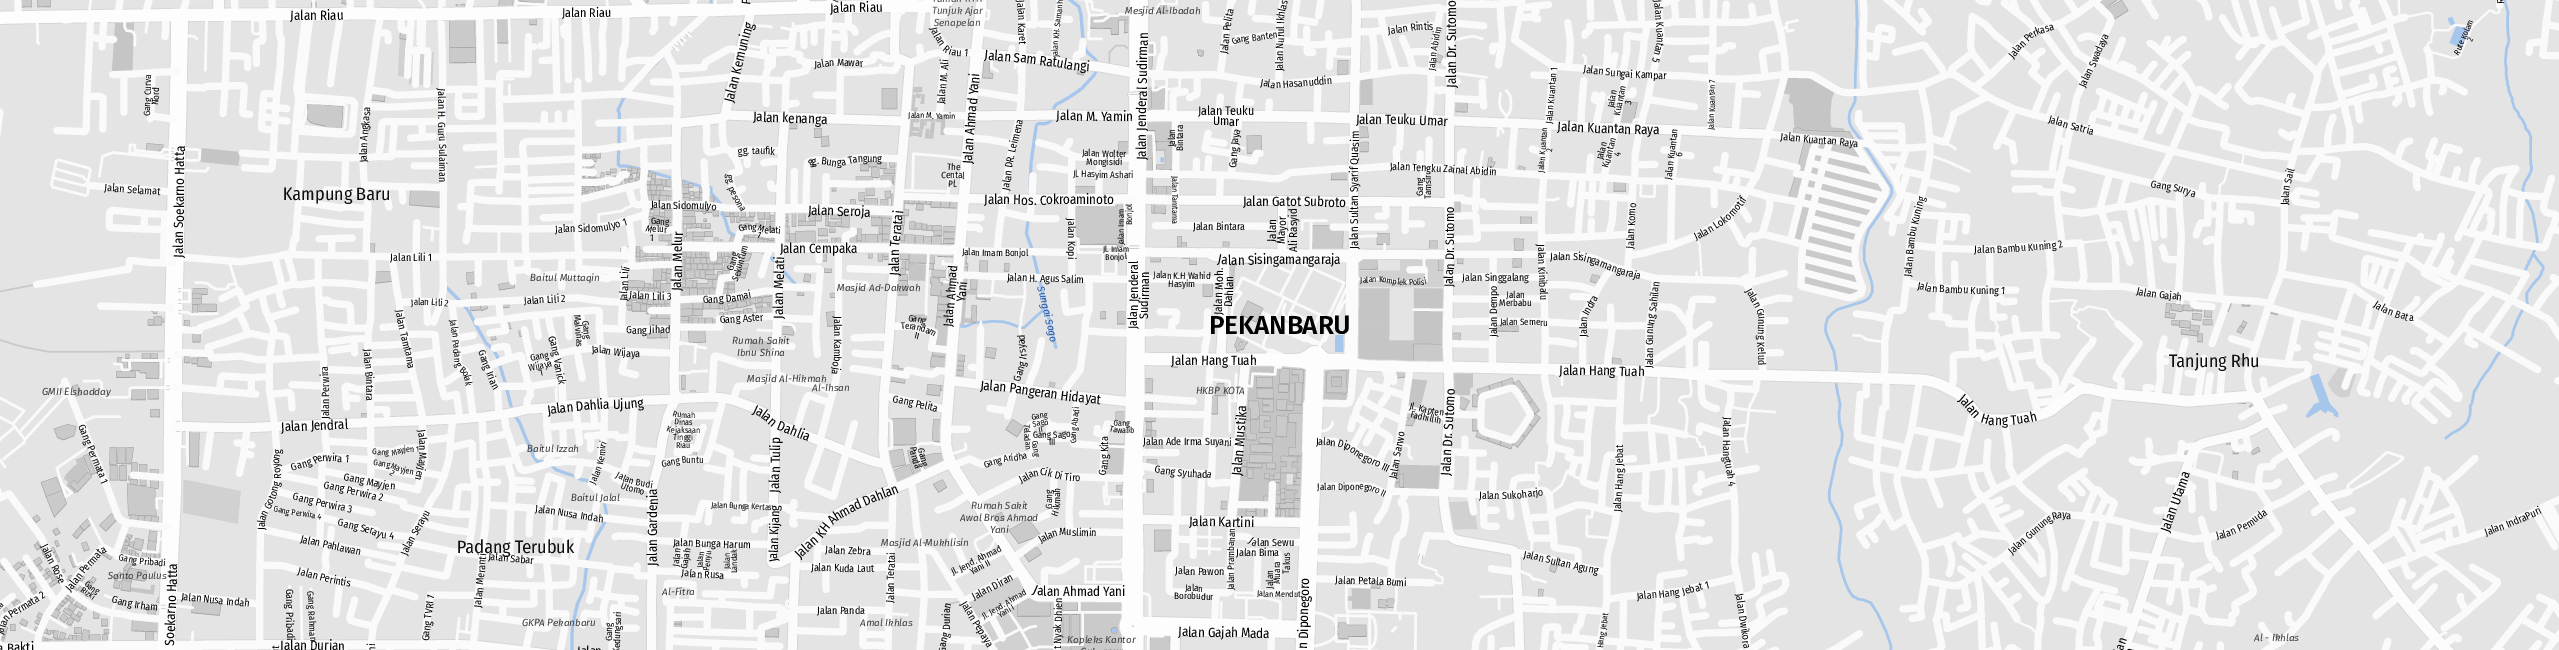 Stadtplan Pekanbaru zum Downloaden.